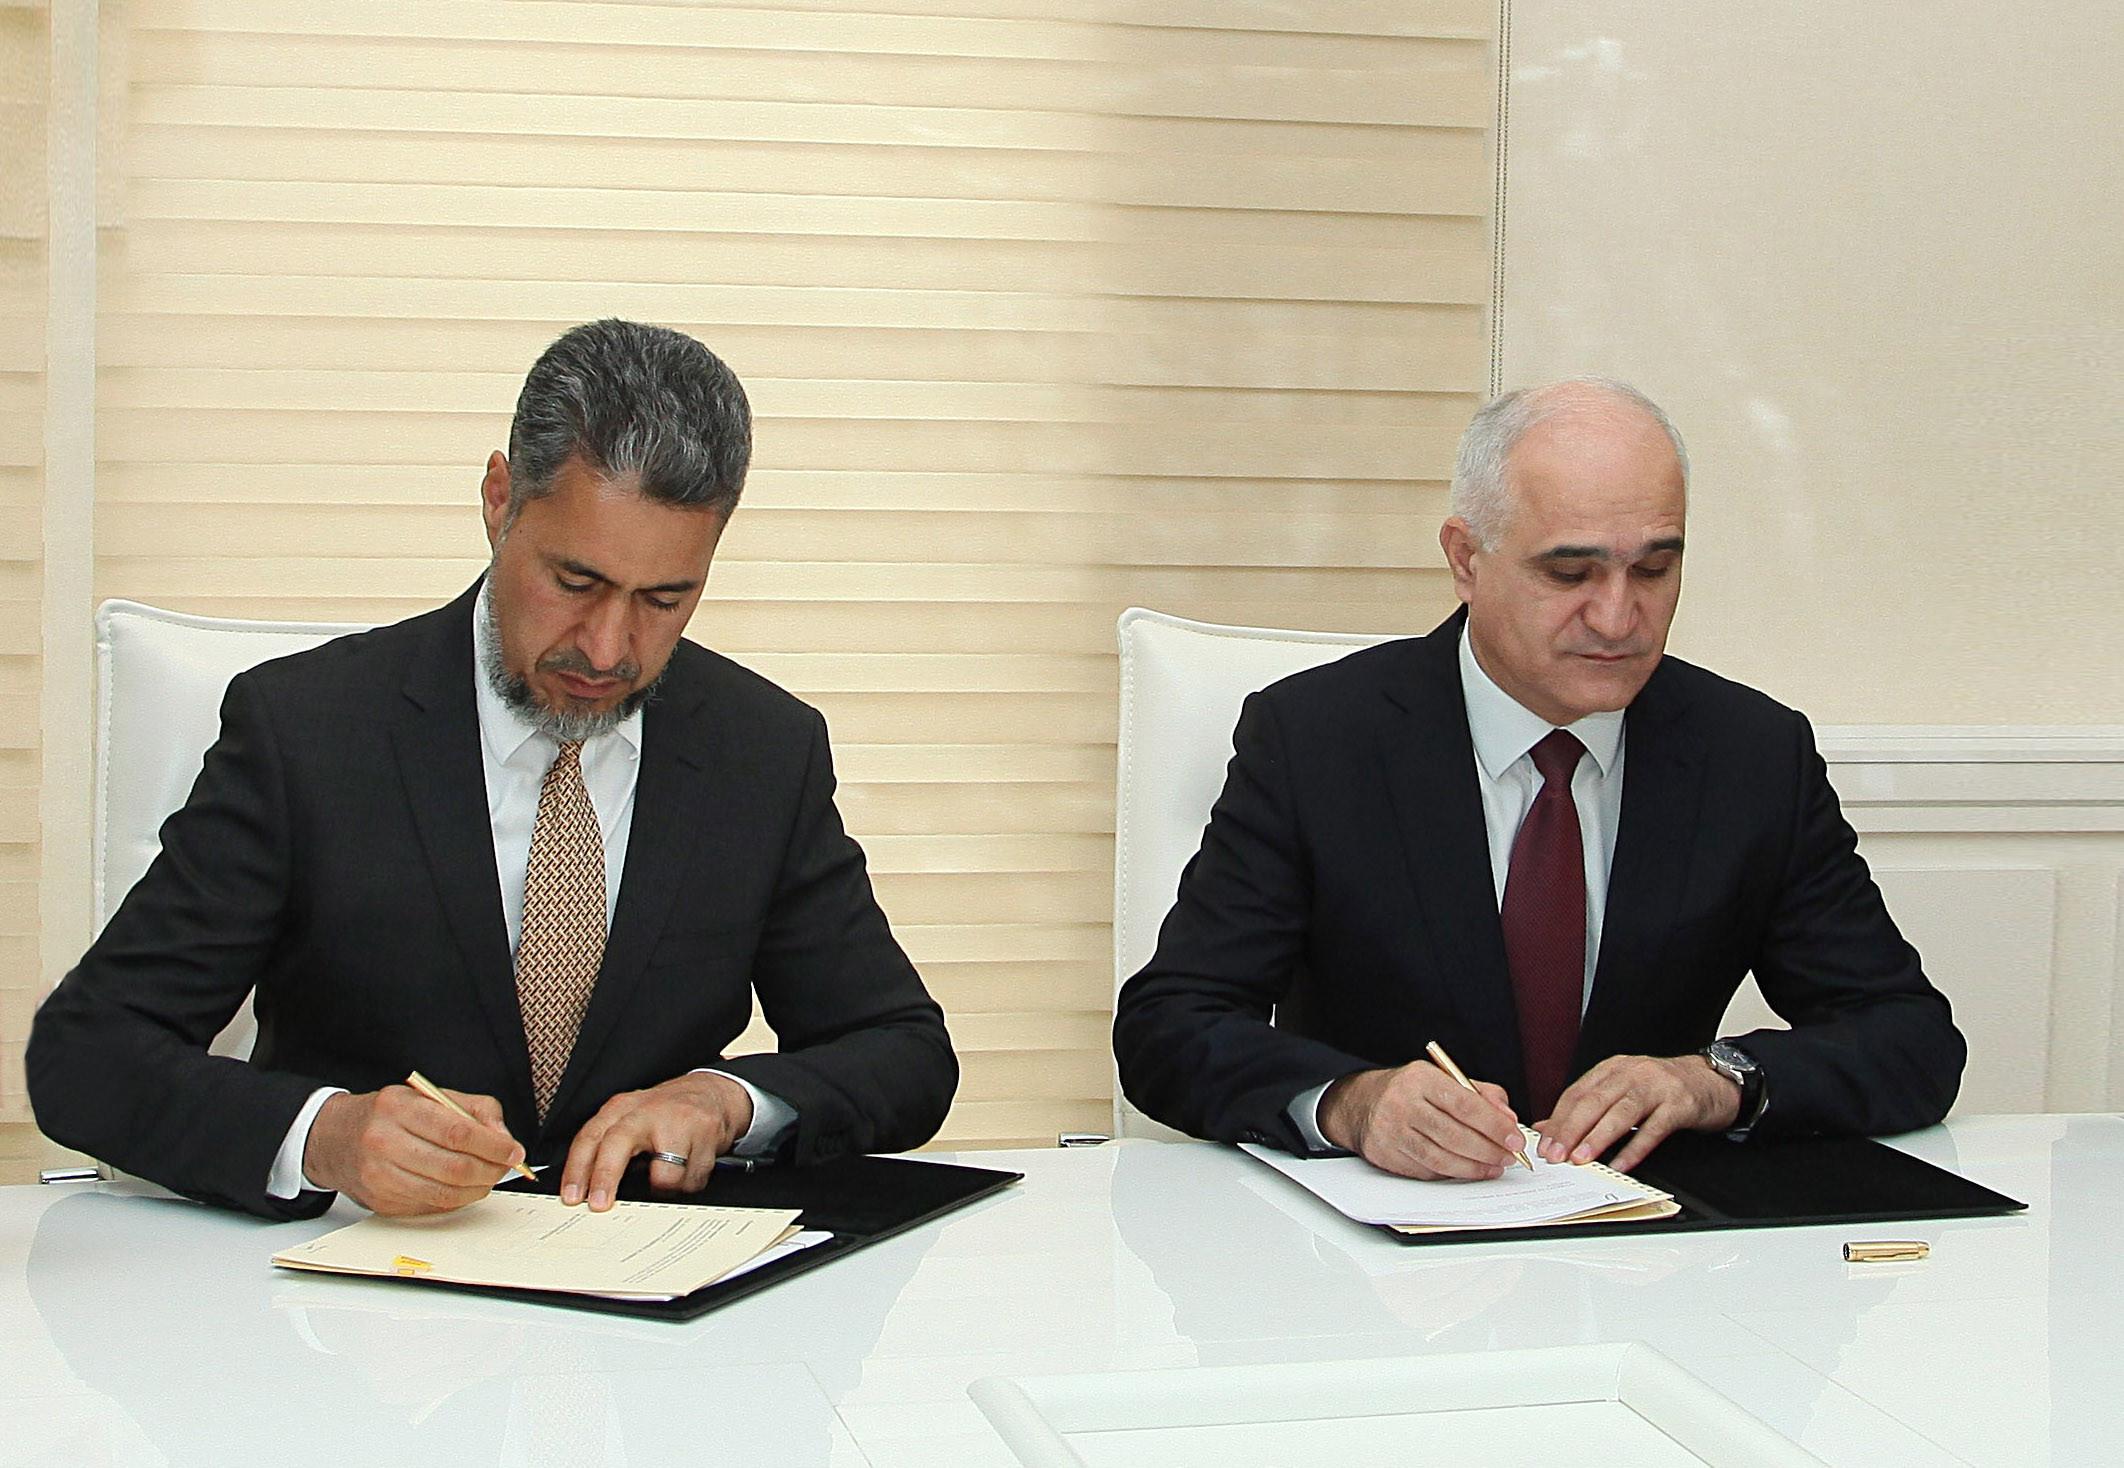 Конвенции азербайджан. Базельское соглашение фото. Шахин директор Сокар банк Азербайджан фото. Grant Agreement.